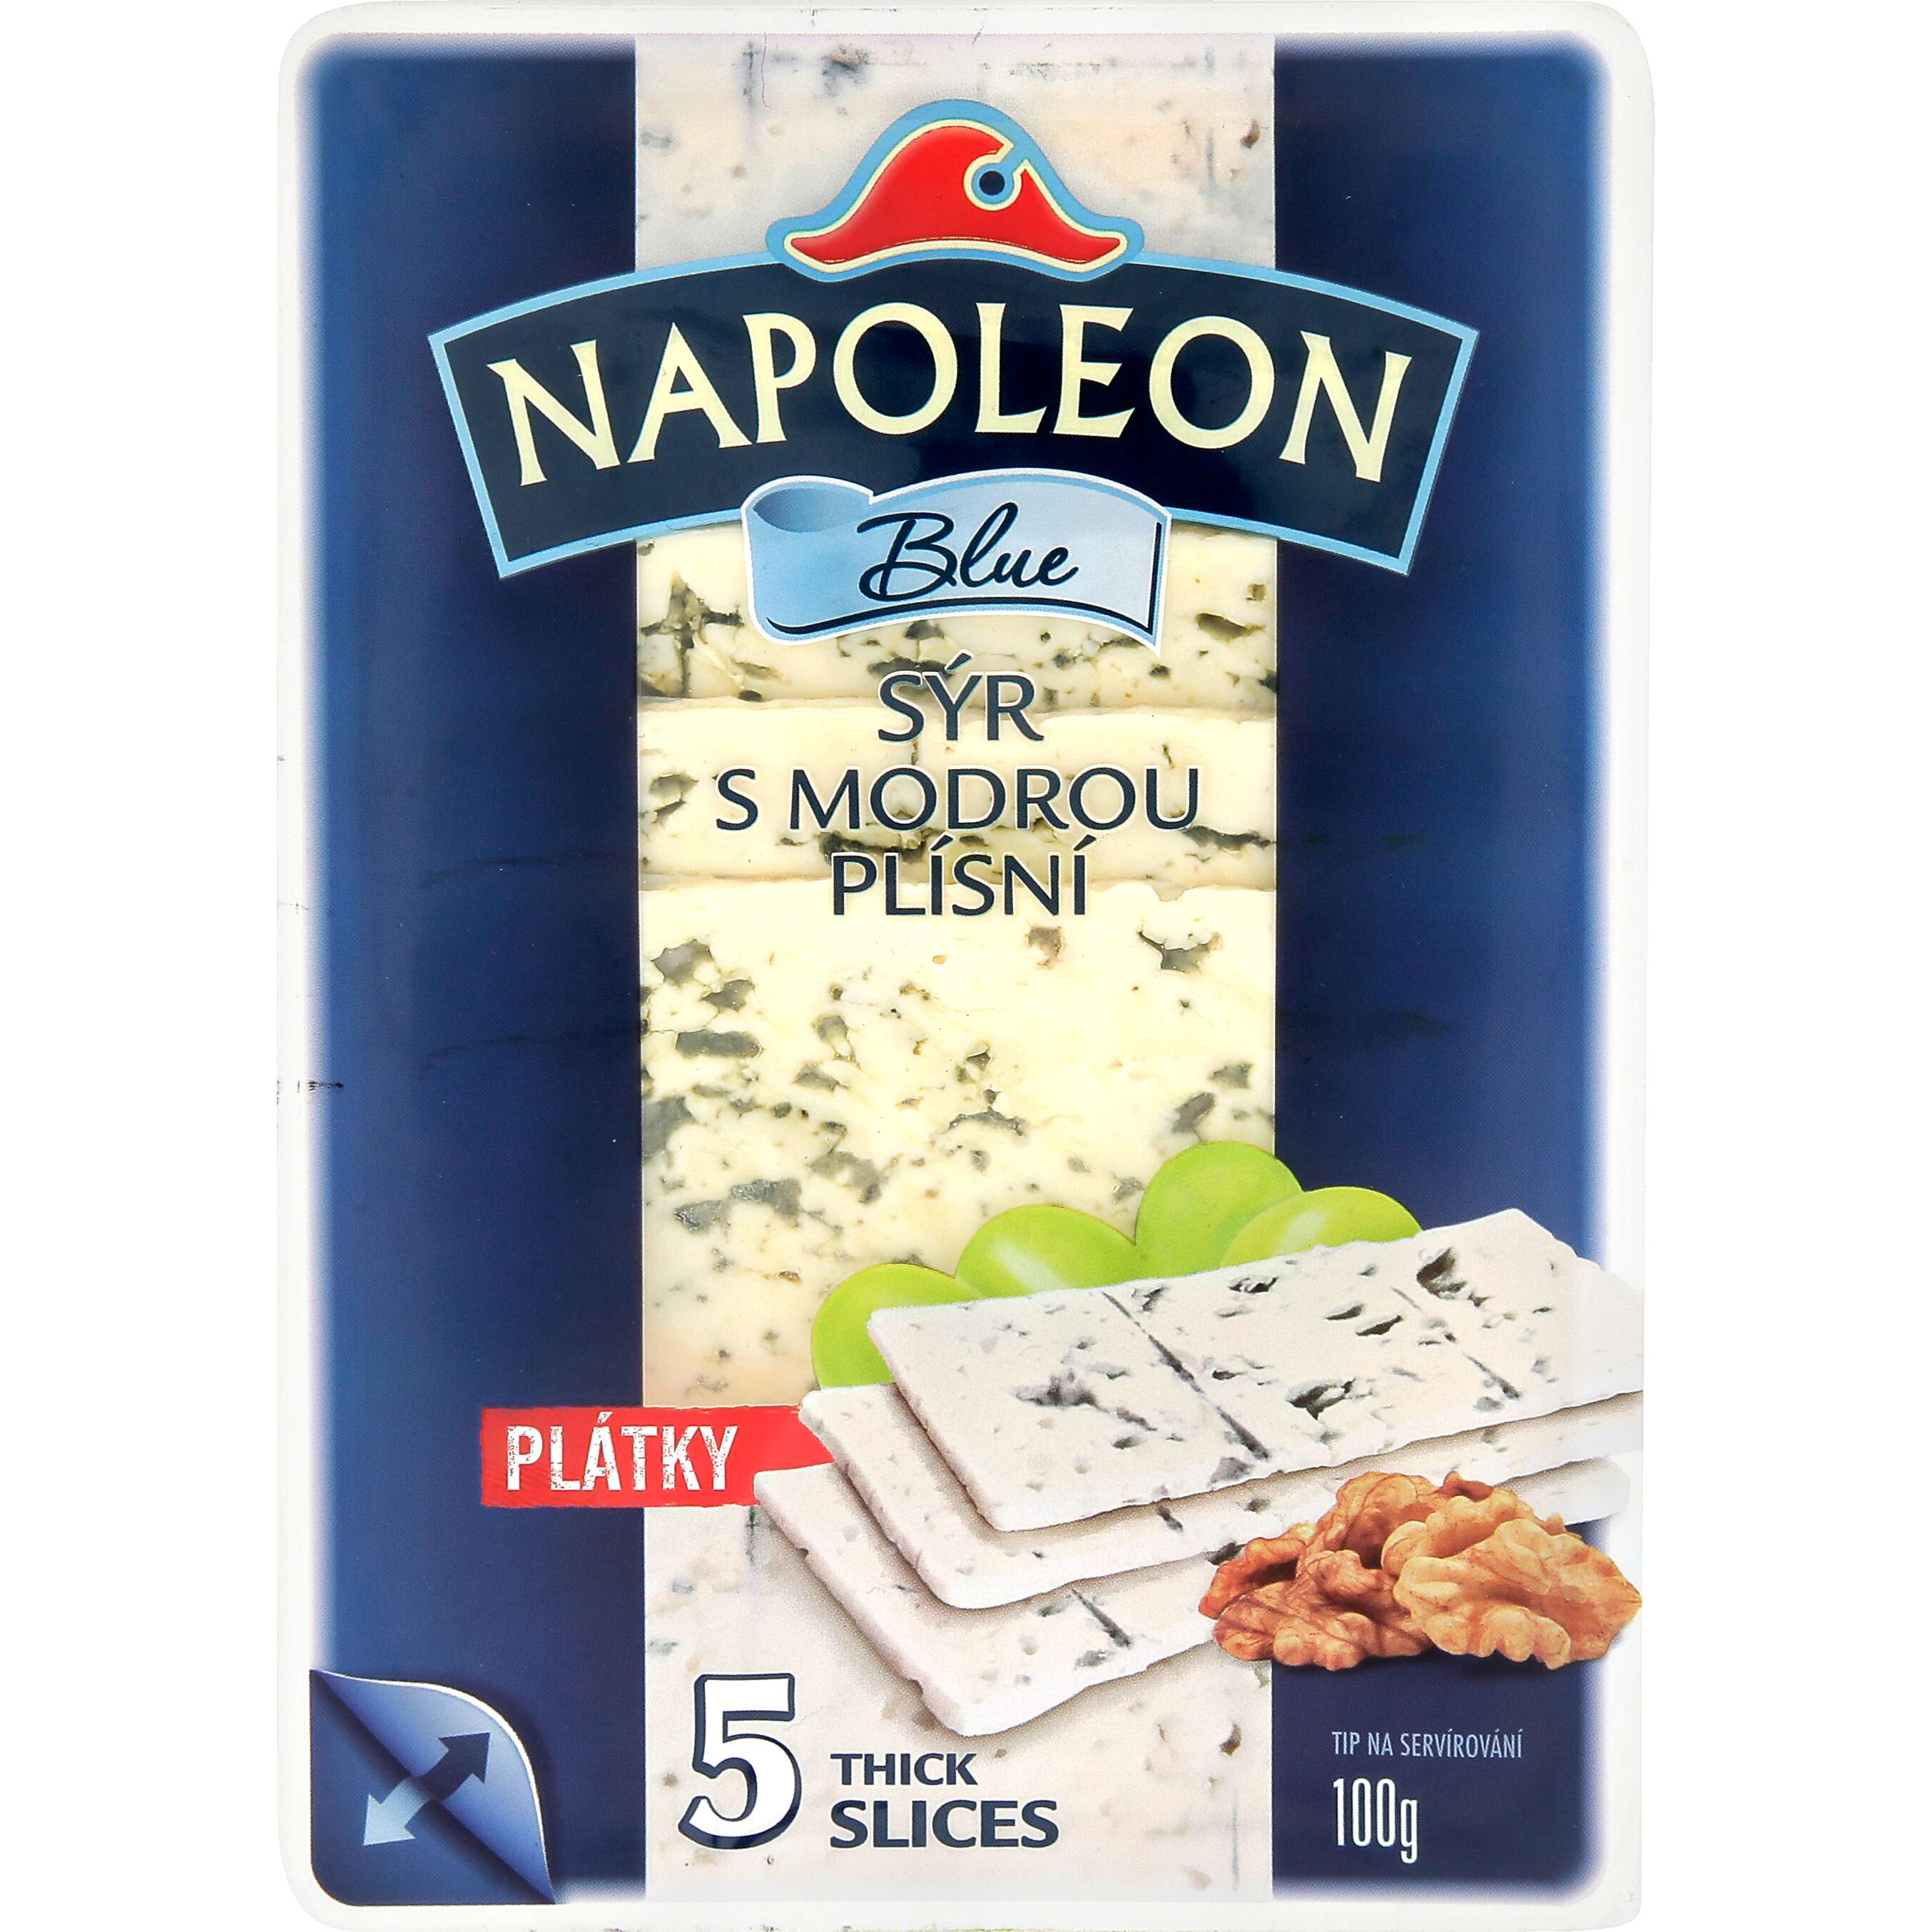 Zobrazit nabídku Napoleon Blue zrající sýr